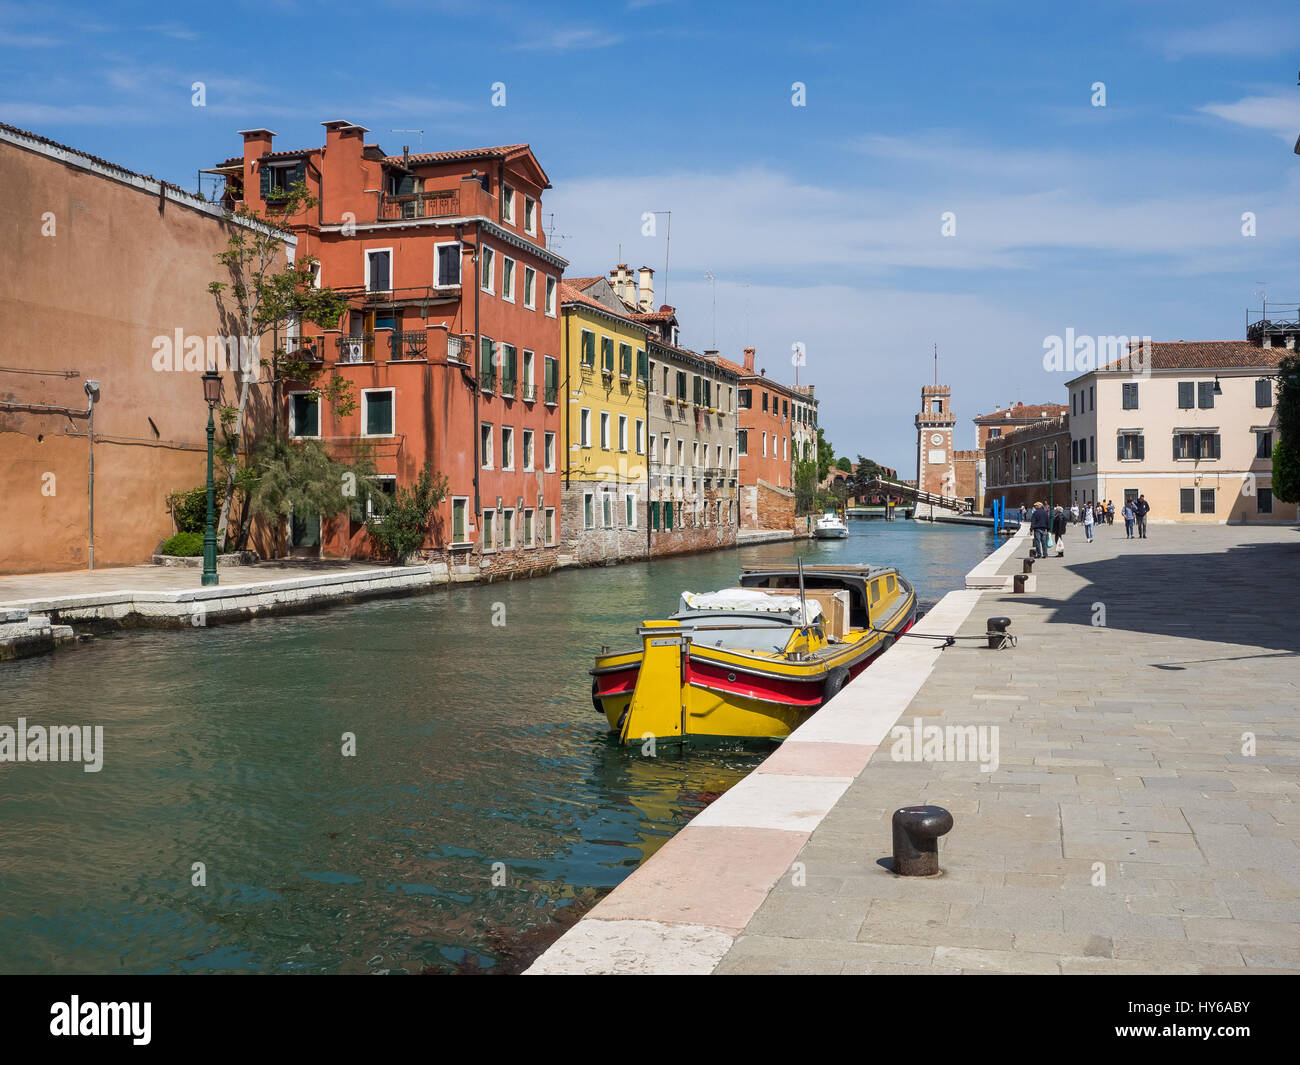 View along canal Rio de l'Arsenal towards the Arsenal gates, Venice, Italy Stock Photo